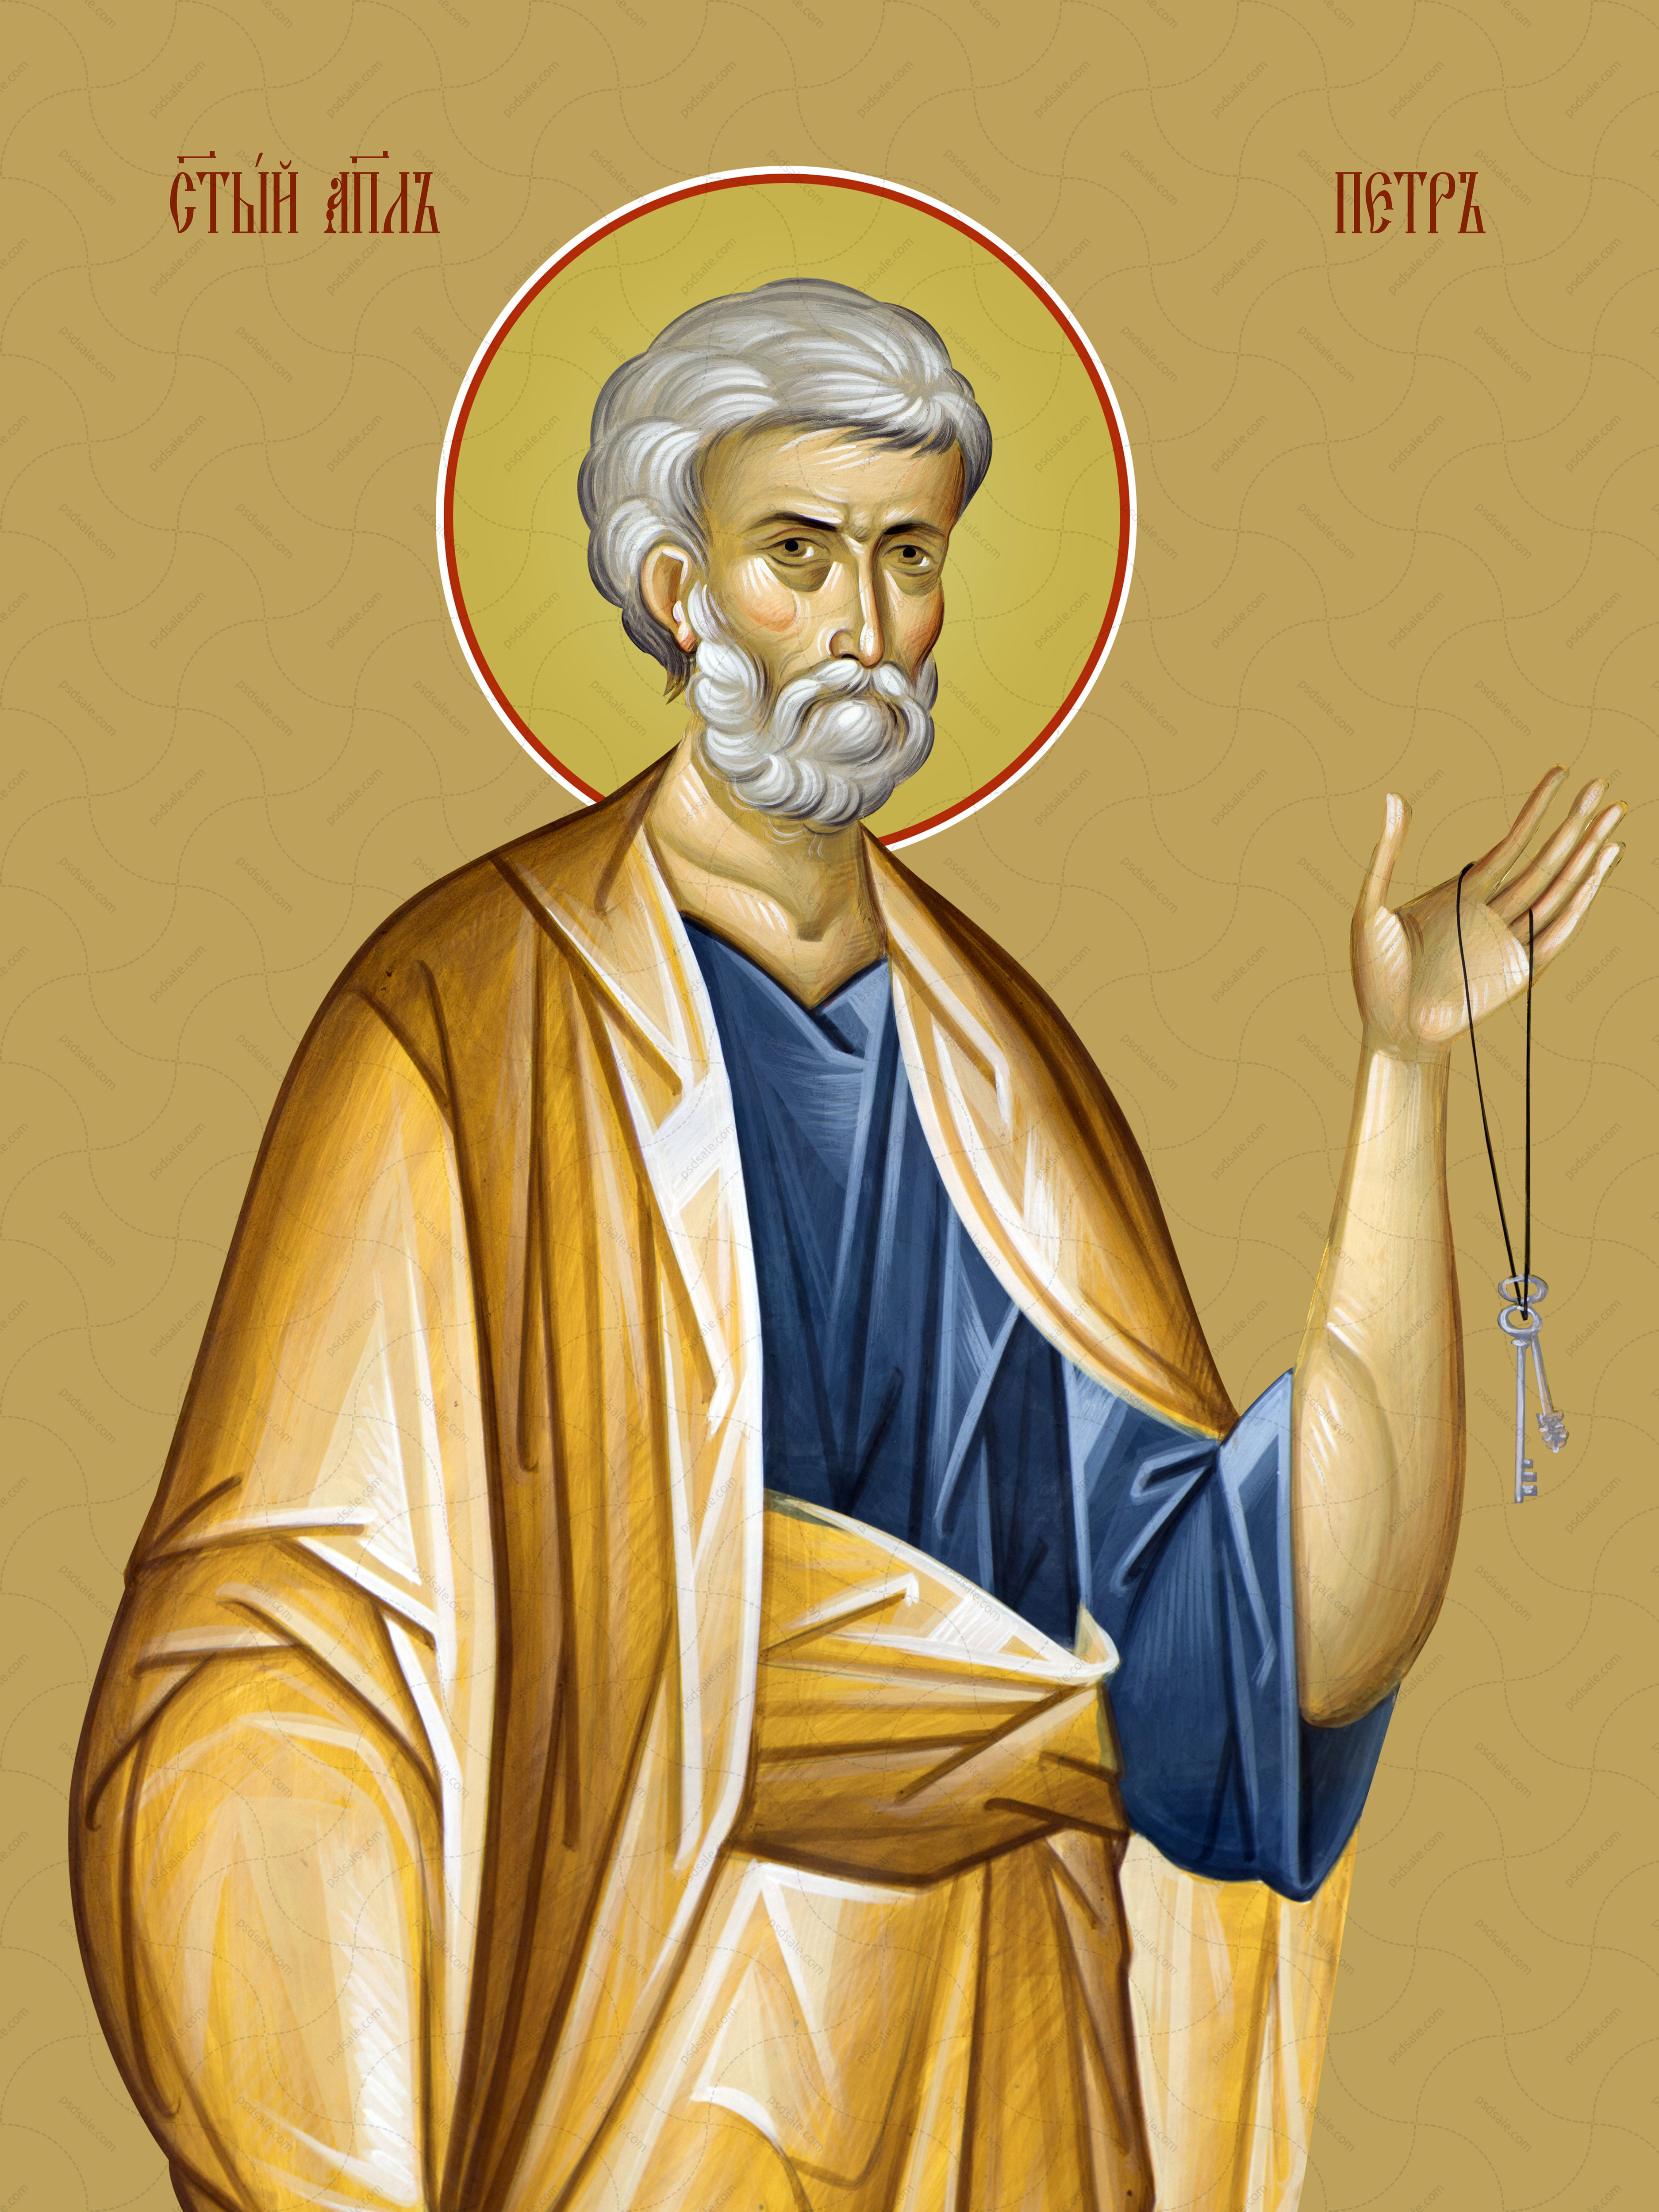 Петр, святой апостол